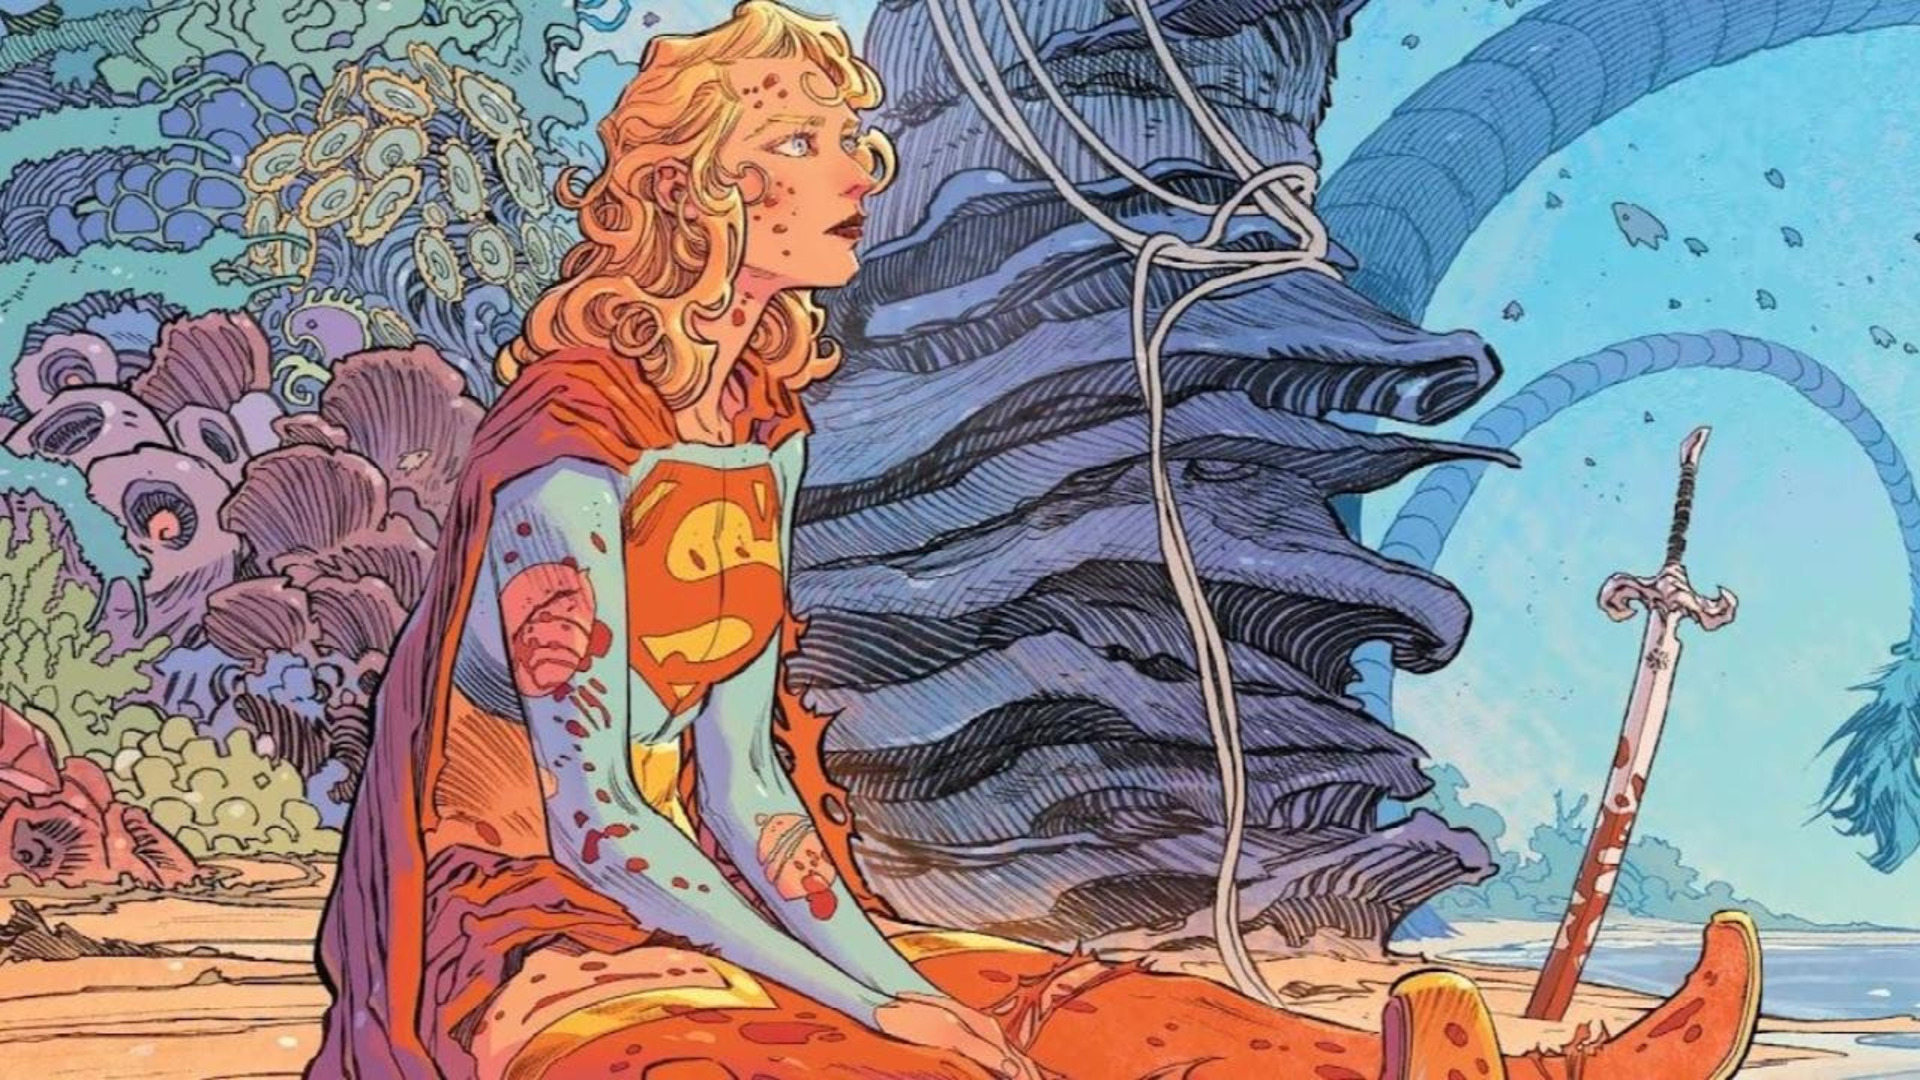 Supergirl comic